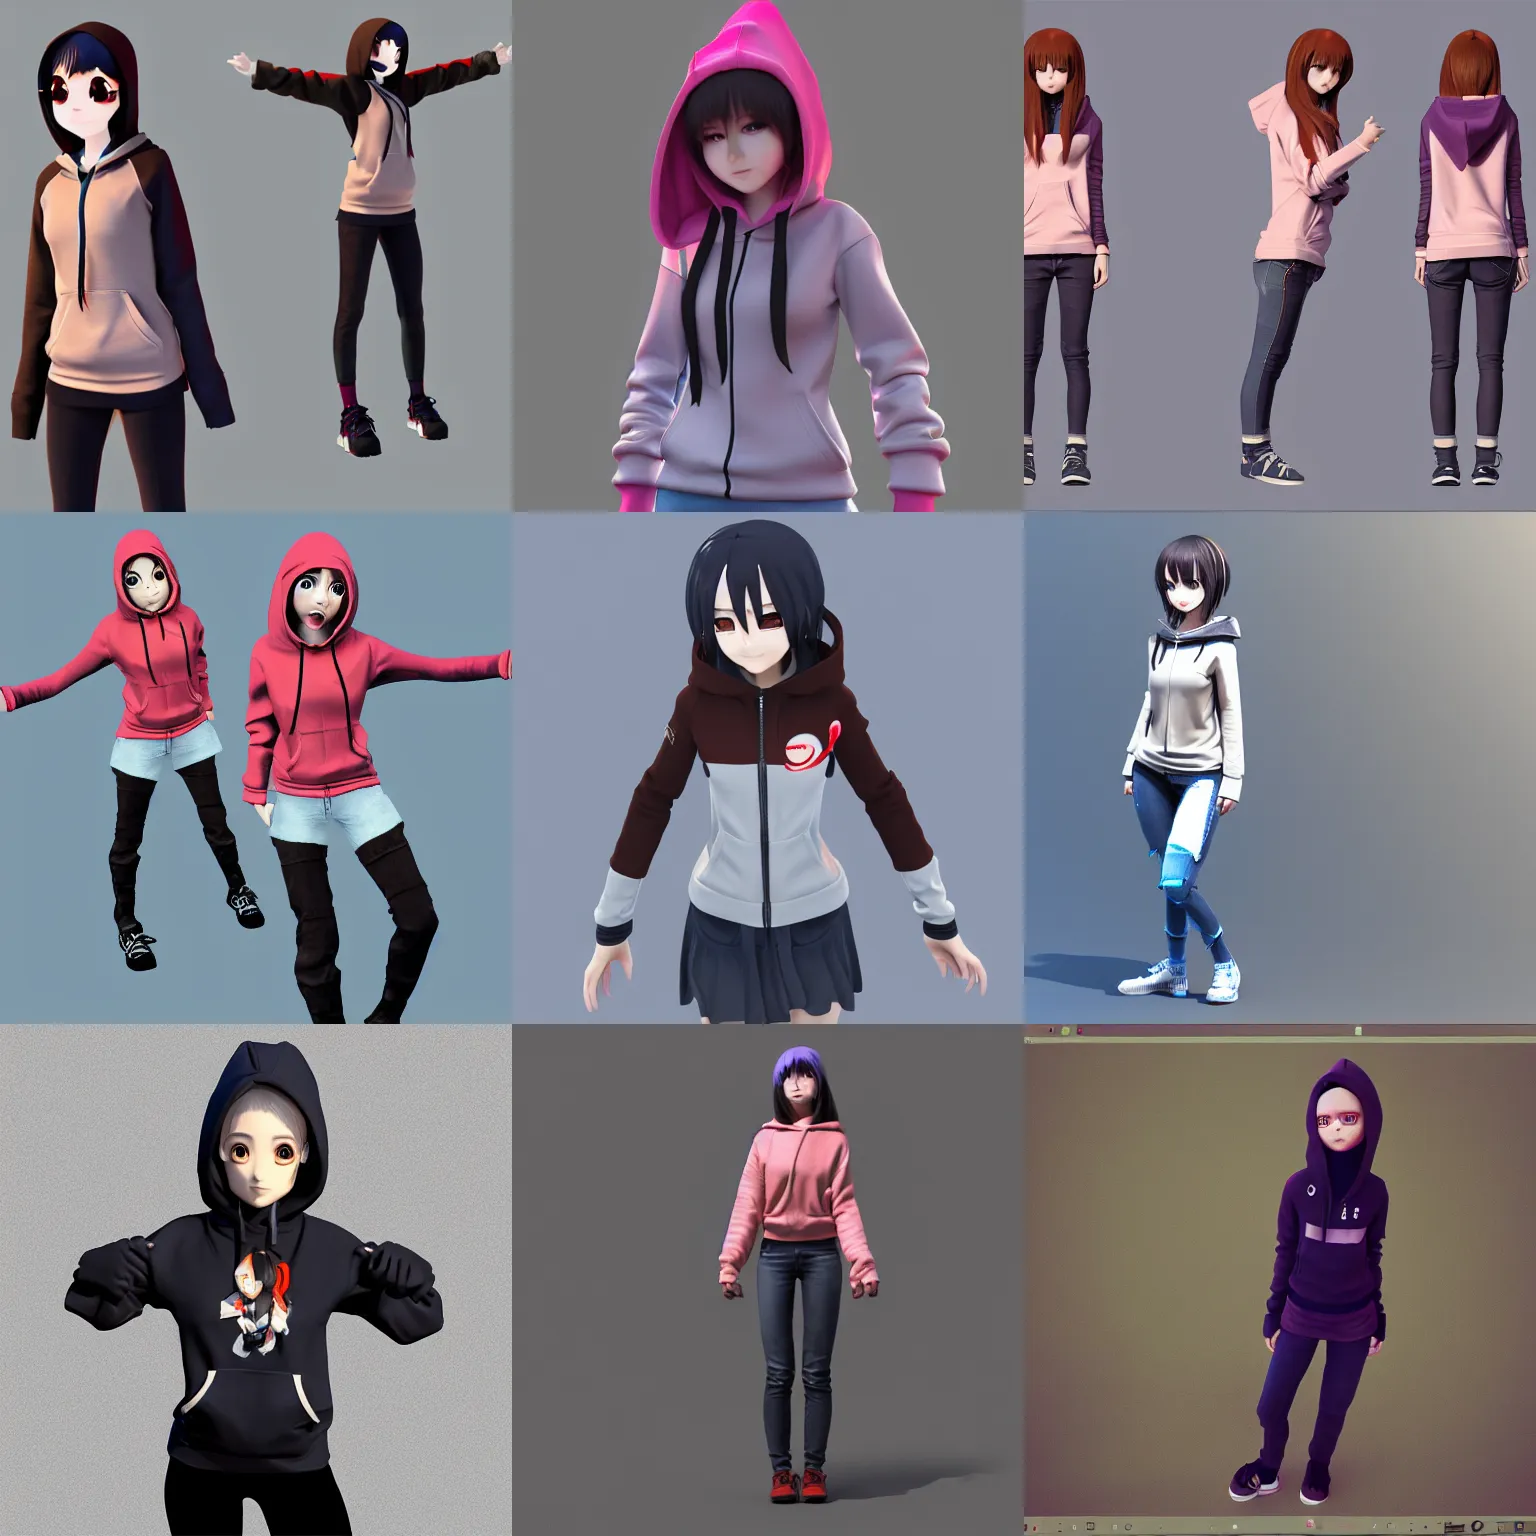 Prompt: t-pose anime girl wearing hoodie, 3d model, artstation, sketchfab, renderhub